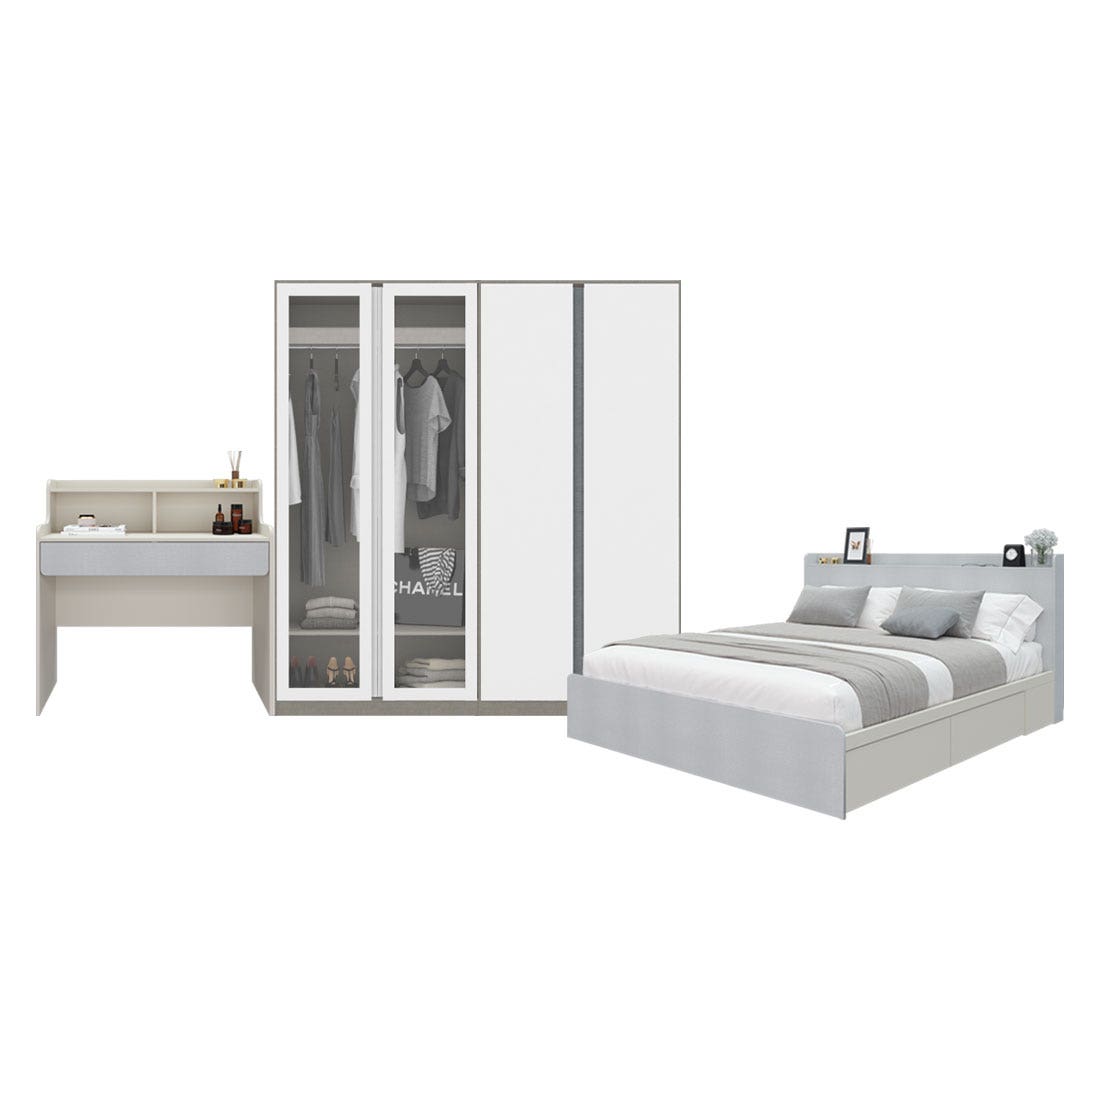 ชุดห้องนอน 6 ฟุต & ตู้ Blox 200 ซม. & โต๊ะเครื่องแป้ง รุ่น Aiko สีขาว01